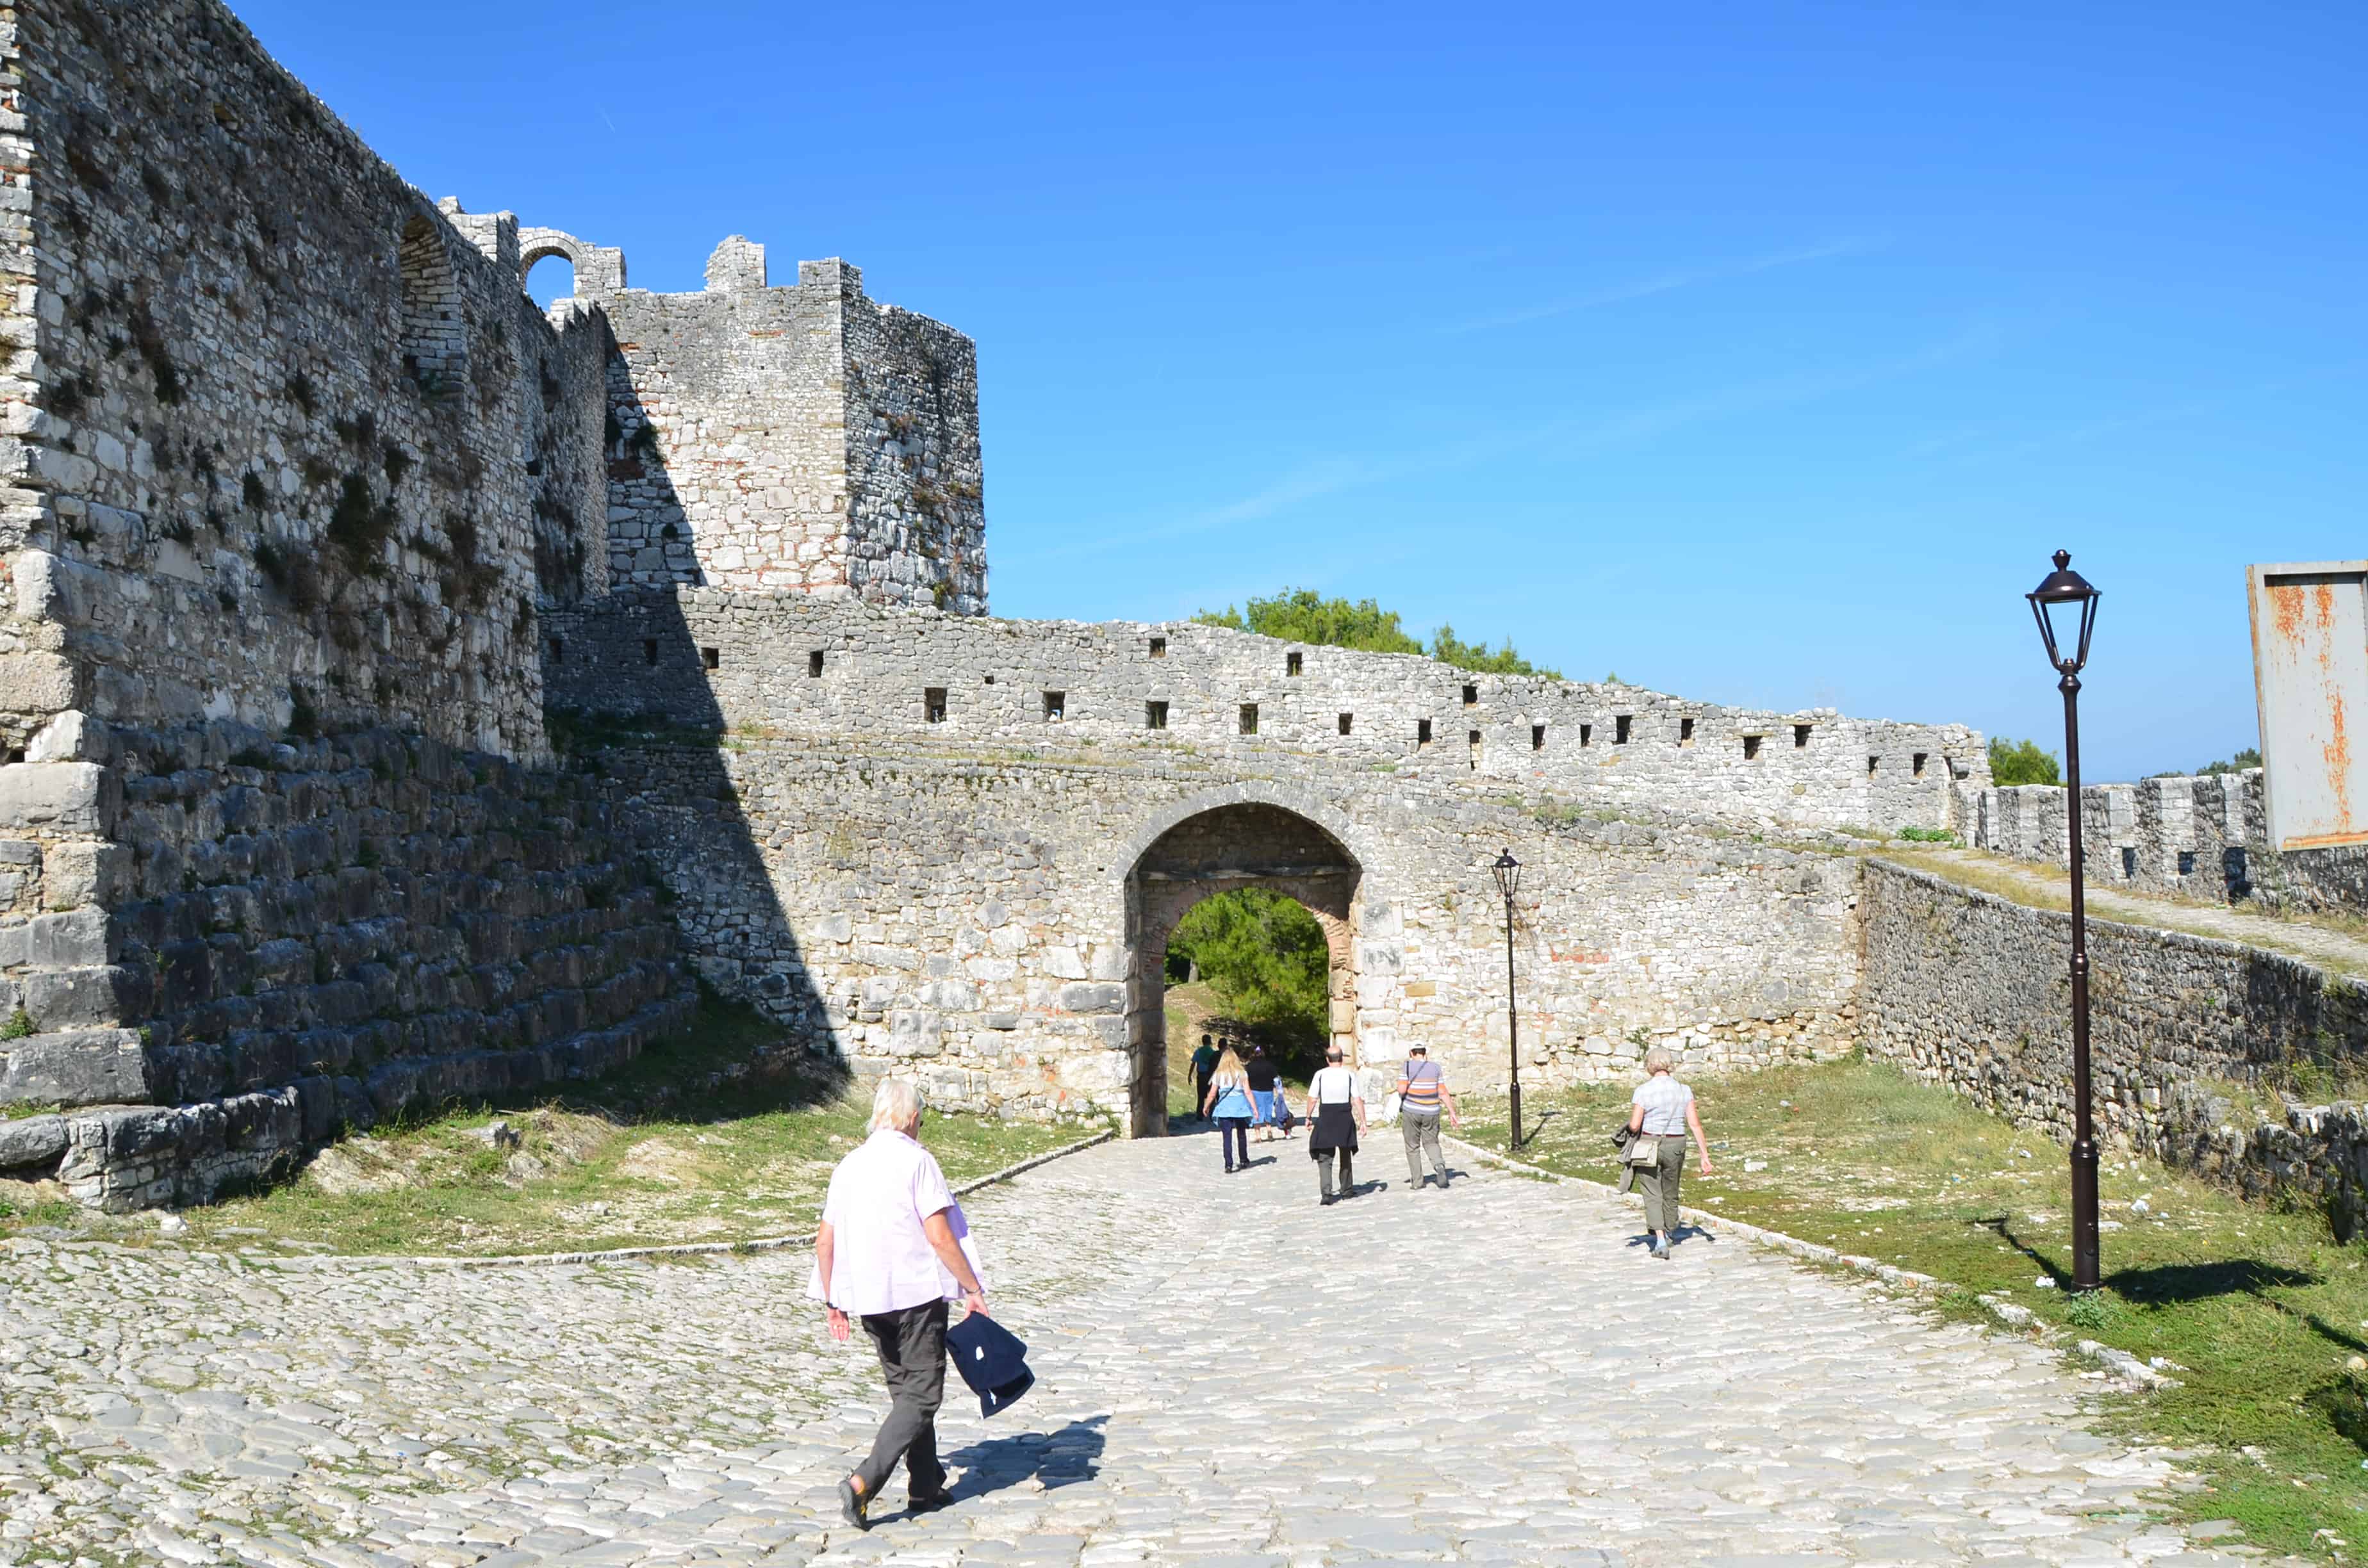 The gate to Berat Castle in Berat, Albania